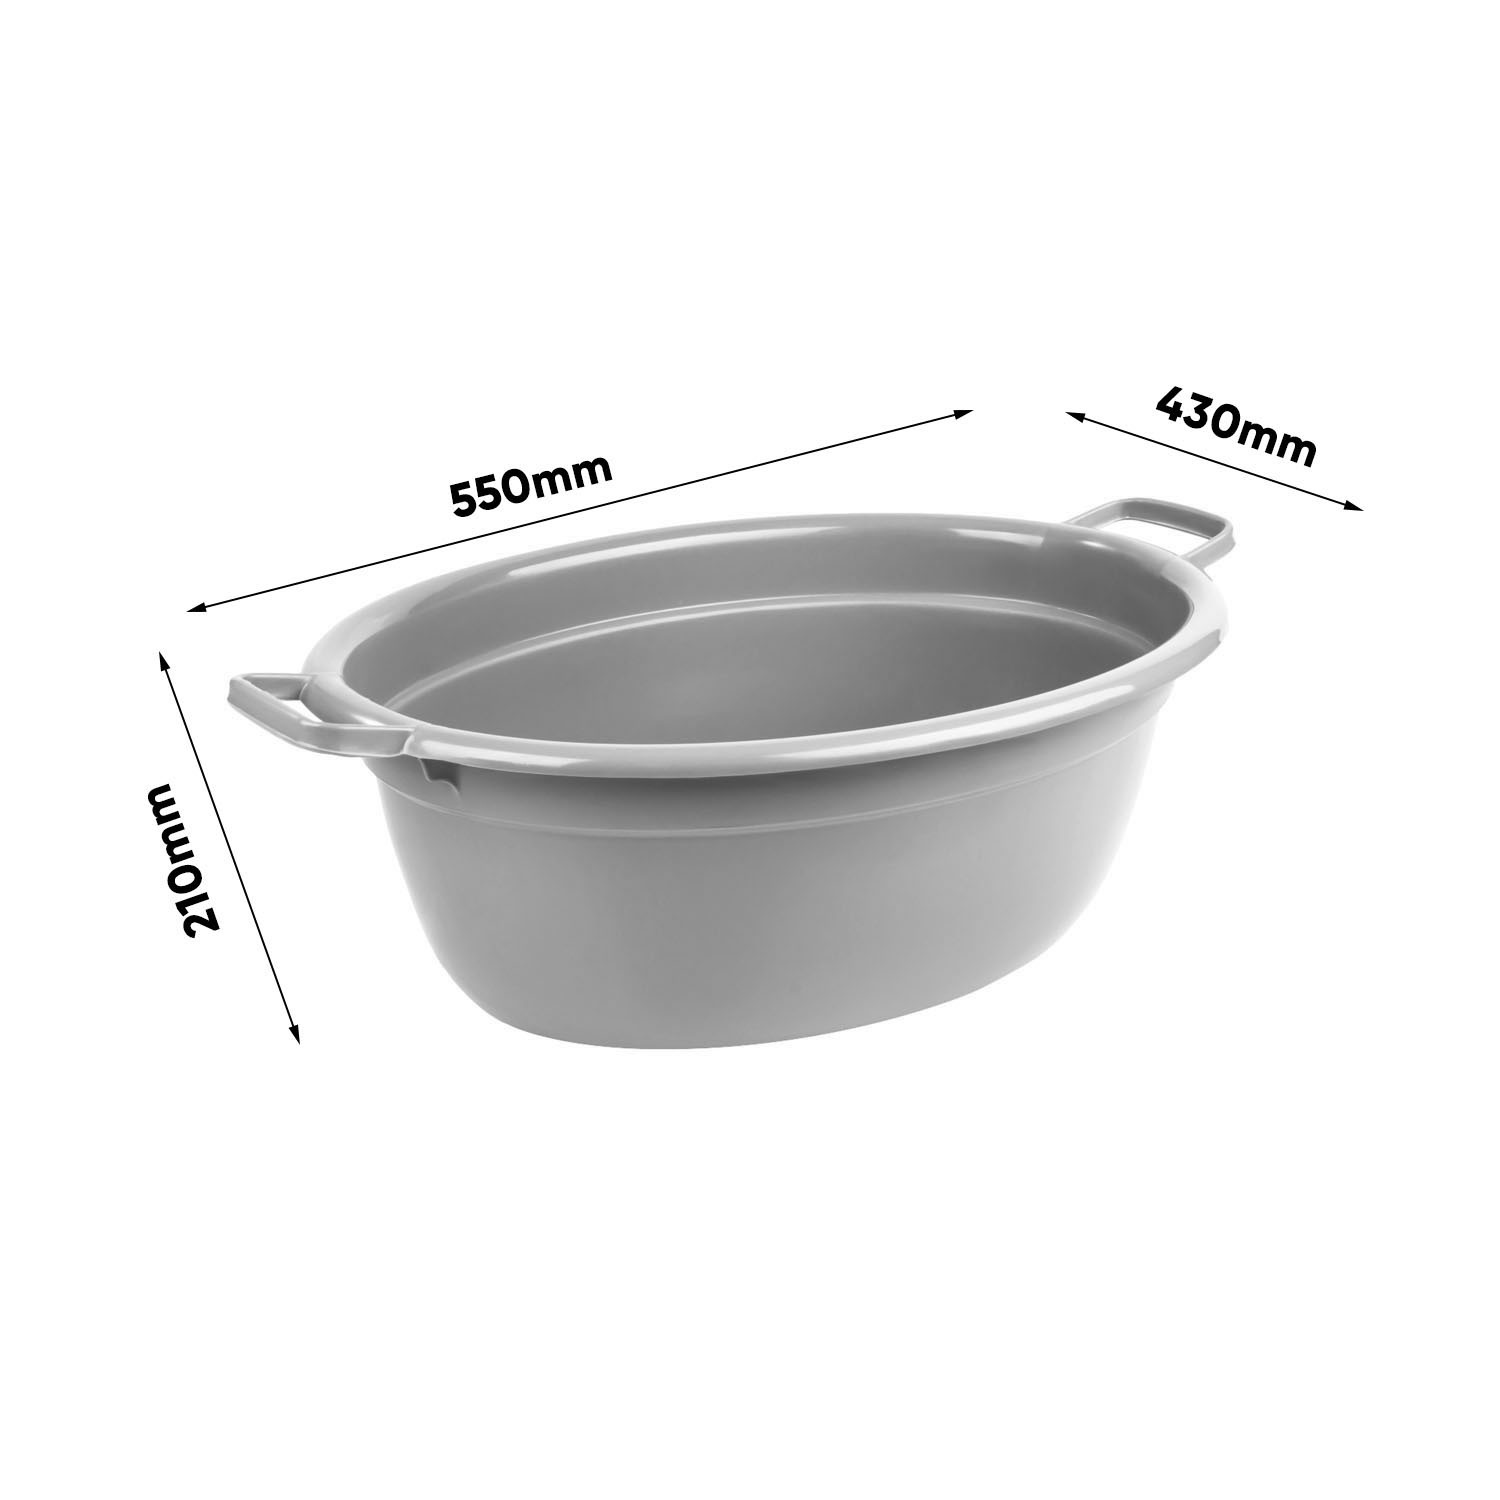 Wymiary Alva laundry tub Urban grey (1)